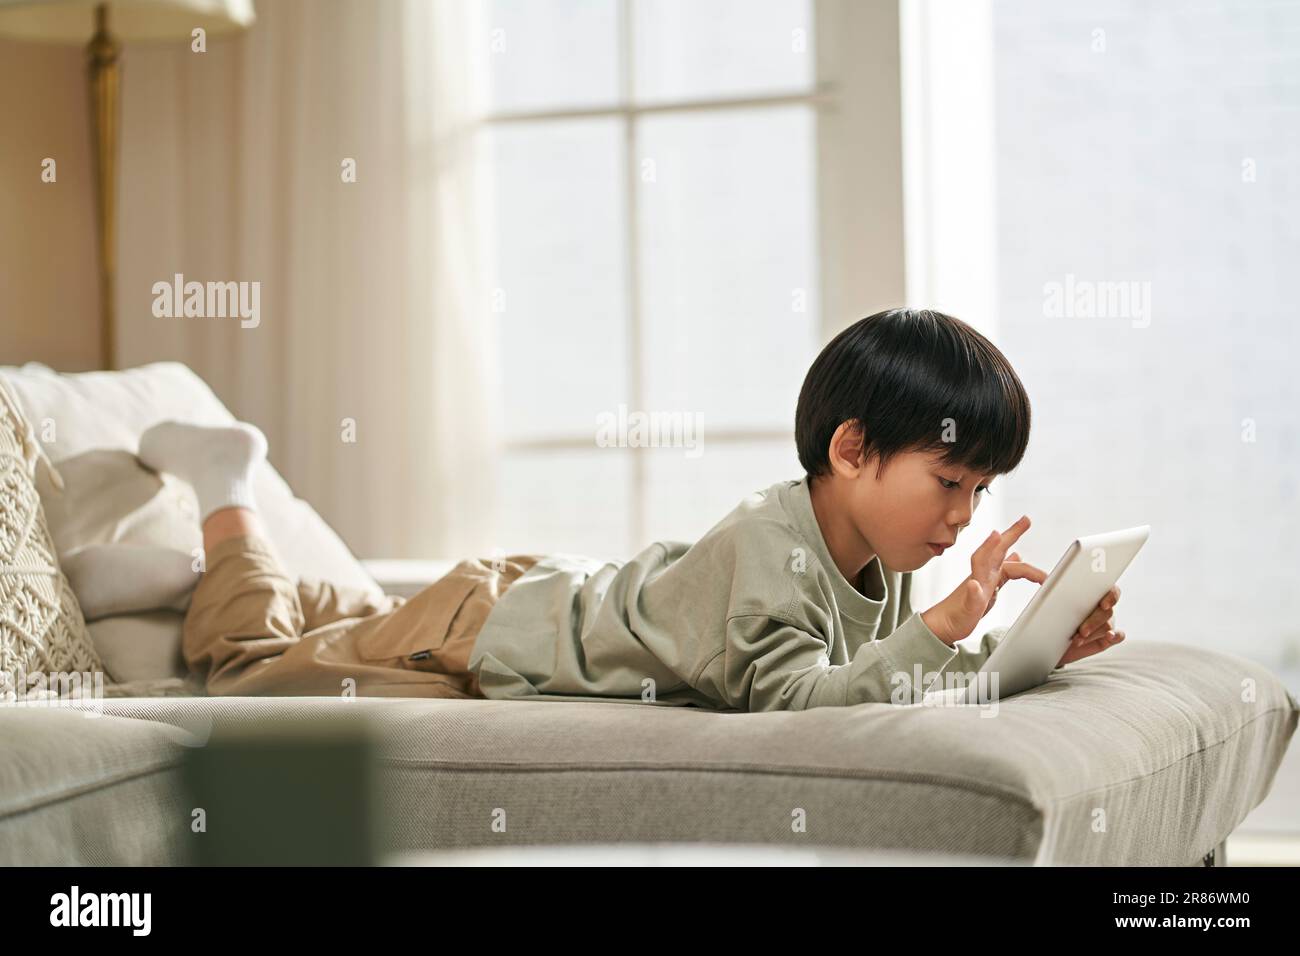 Fünf Jahre alter kleiner asiatischer Junge, der vorne auf dem Familientisch liegt und Computerspiel mit einem digitalen Tablet spielt Stockfoto